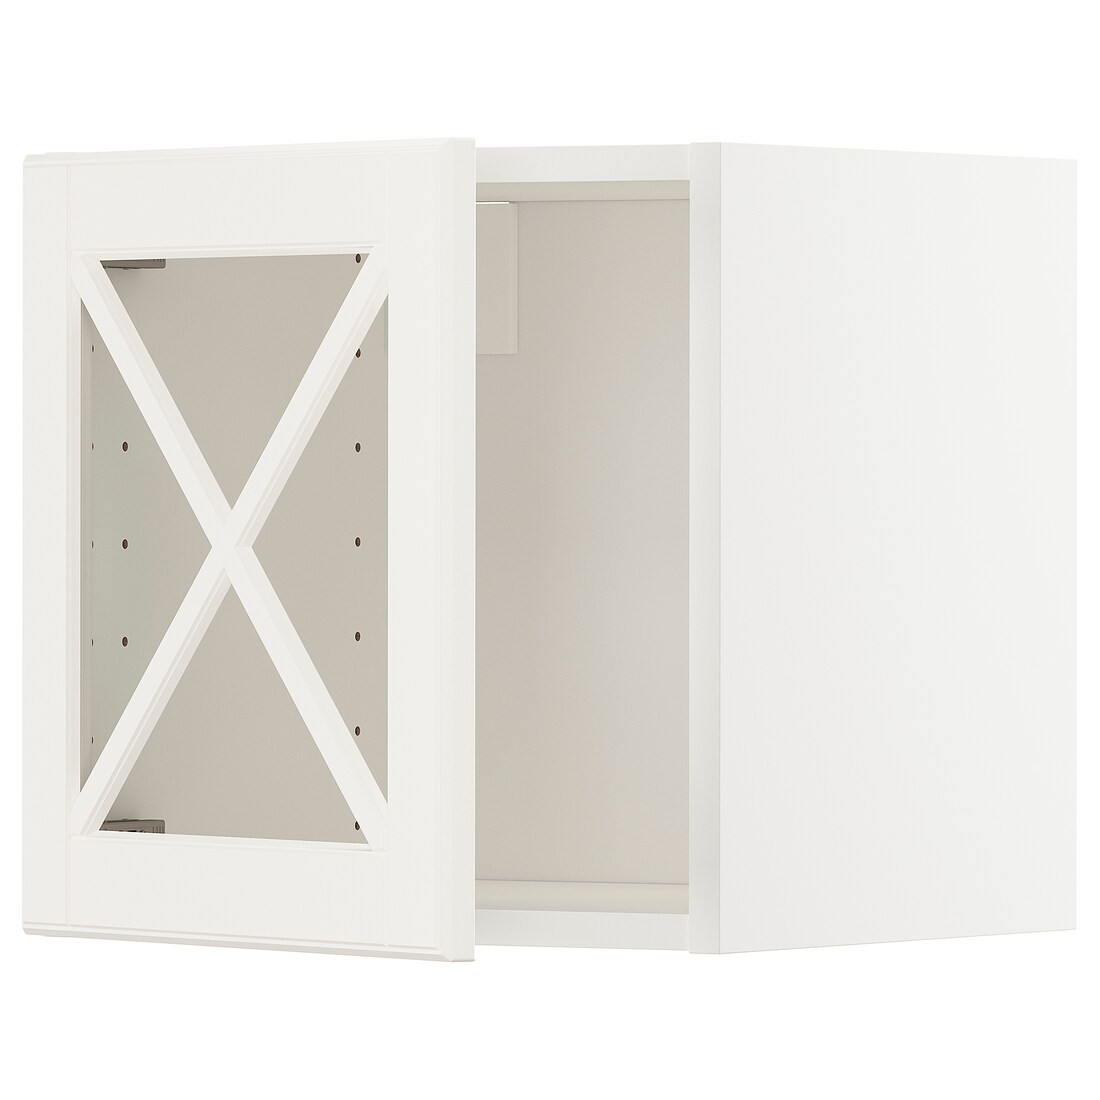 IKEA METOD МЕТОД Навесной шкаф стеклянная дверь, белый / Bodbyn кремовый, 40x40 см 79395032 | 793.950.32